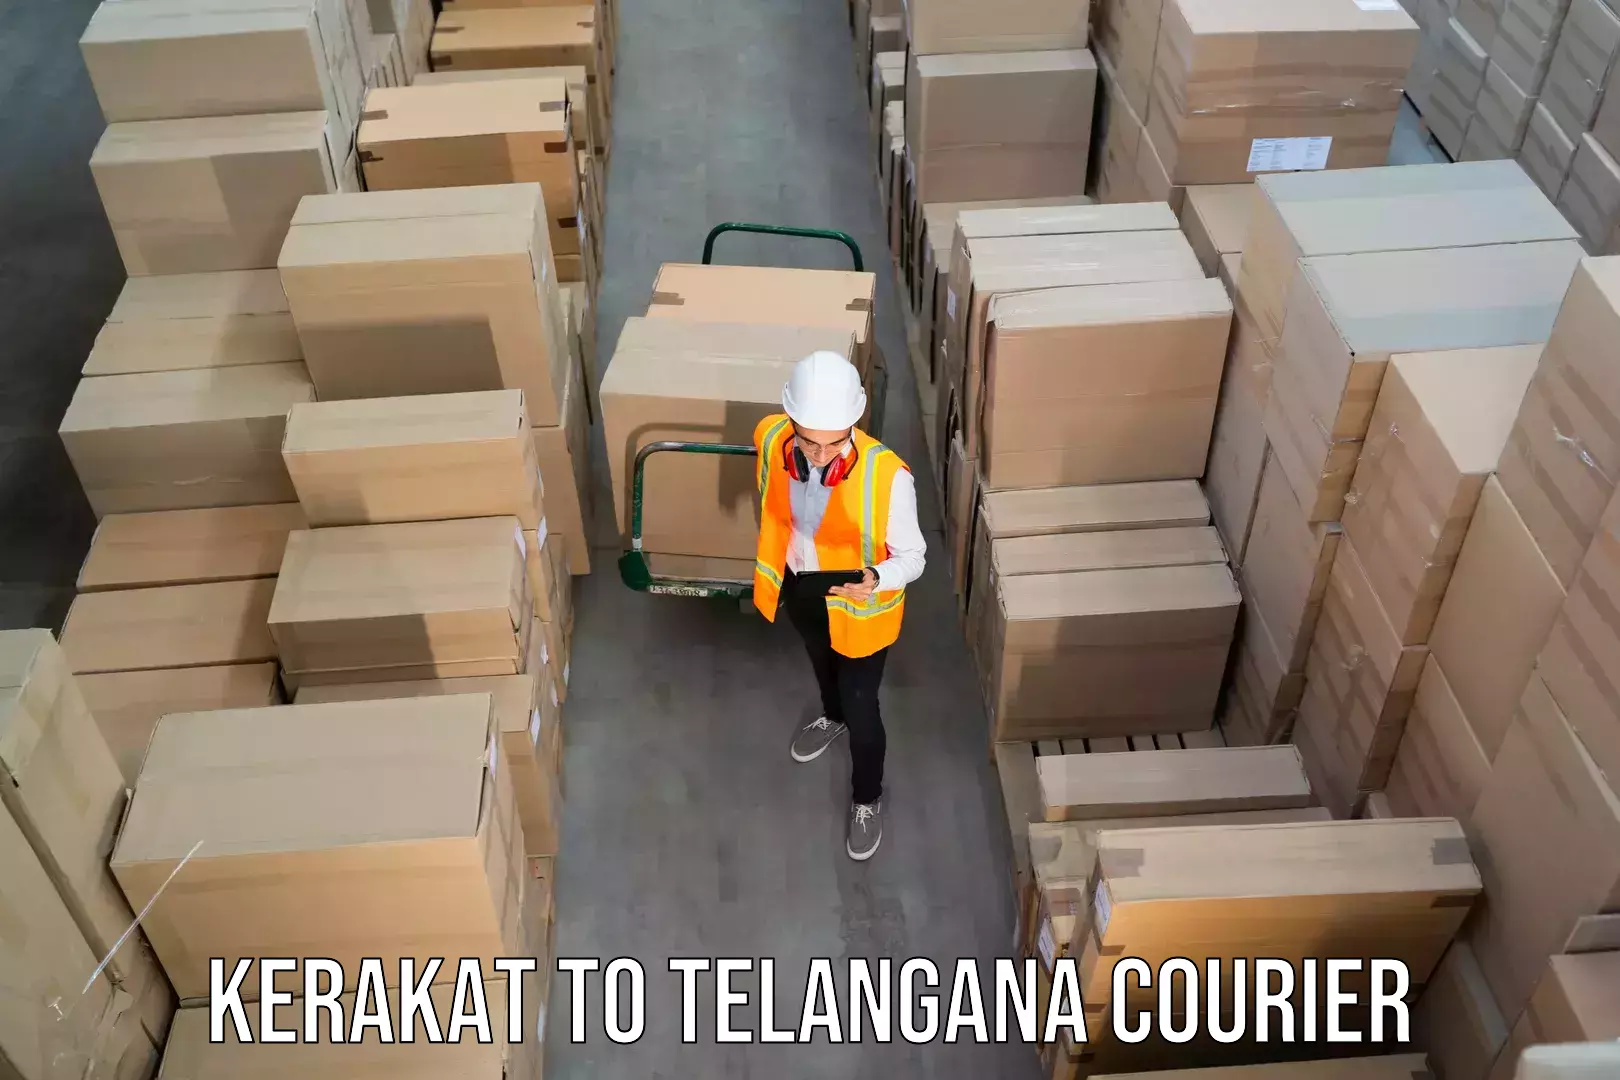 Courier tracking online Kerakat to Telangana